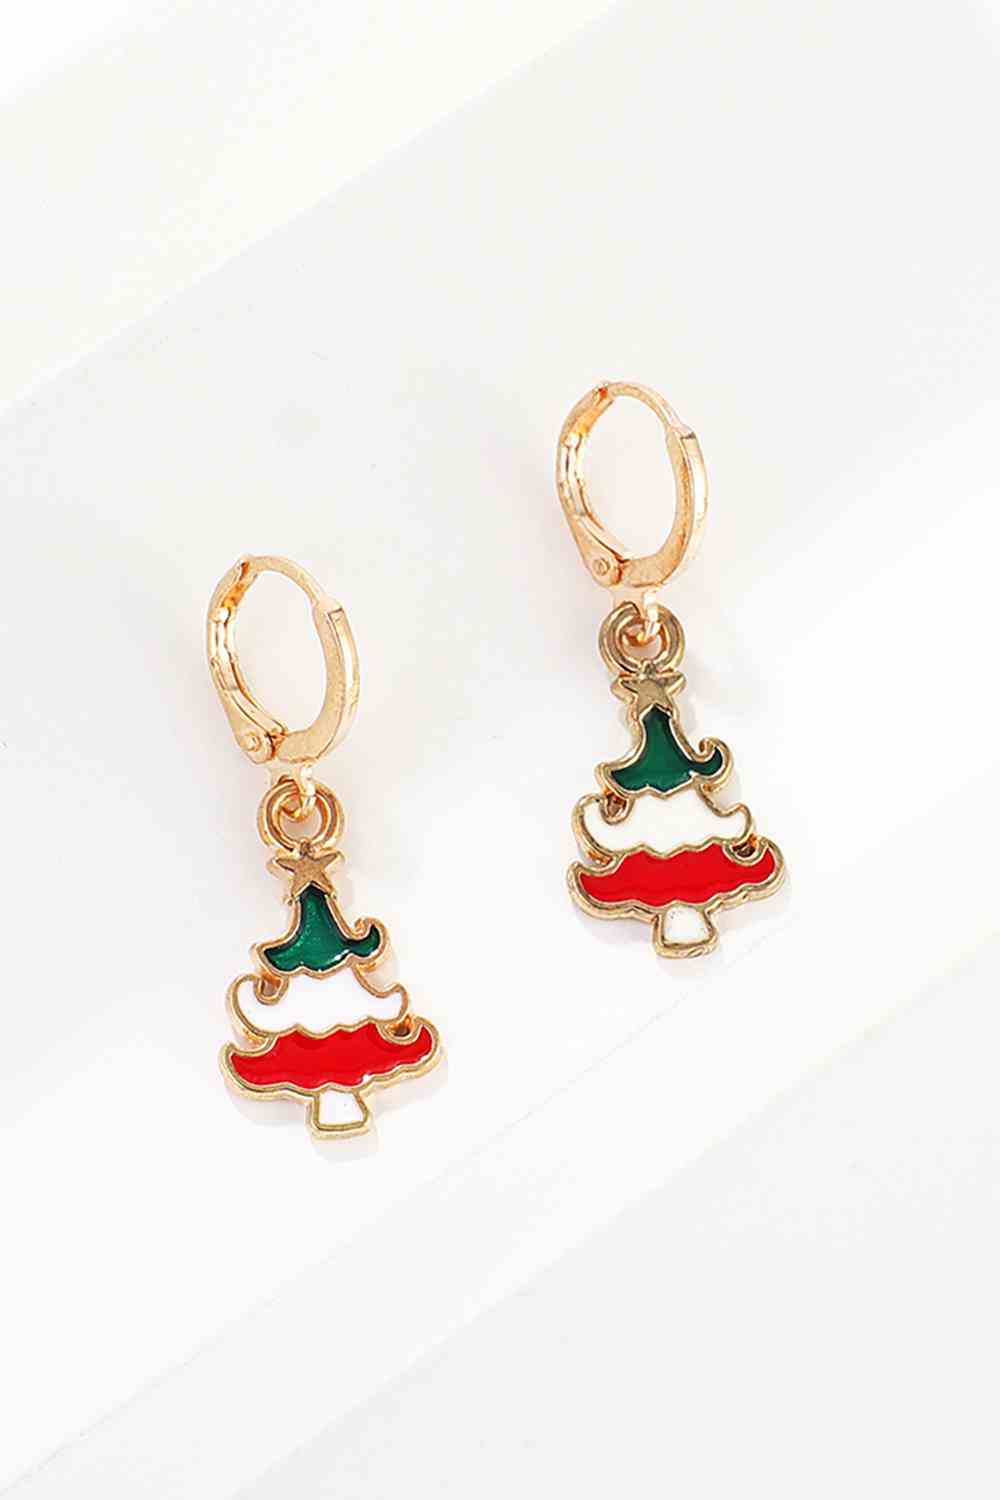 Christmas Theme Alloy Earrings - Women’s Jewelry - Earrings - 15 - 2024